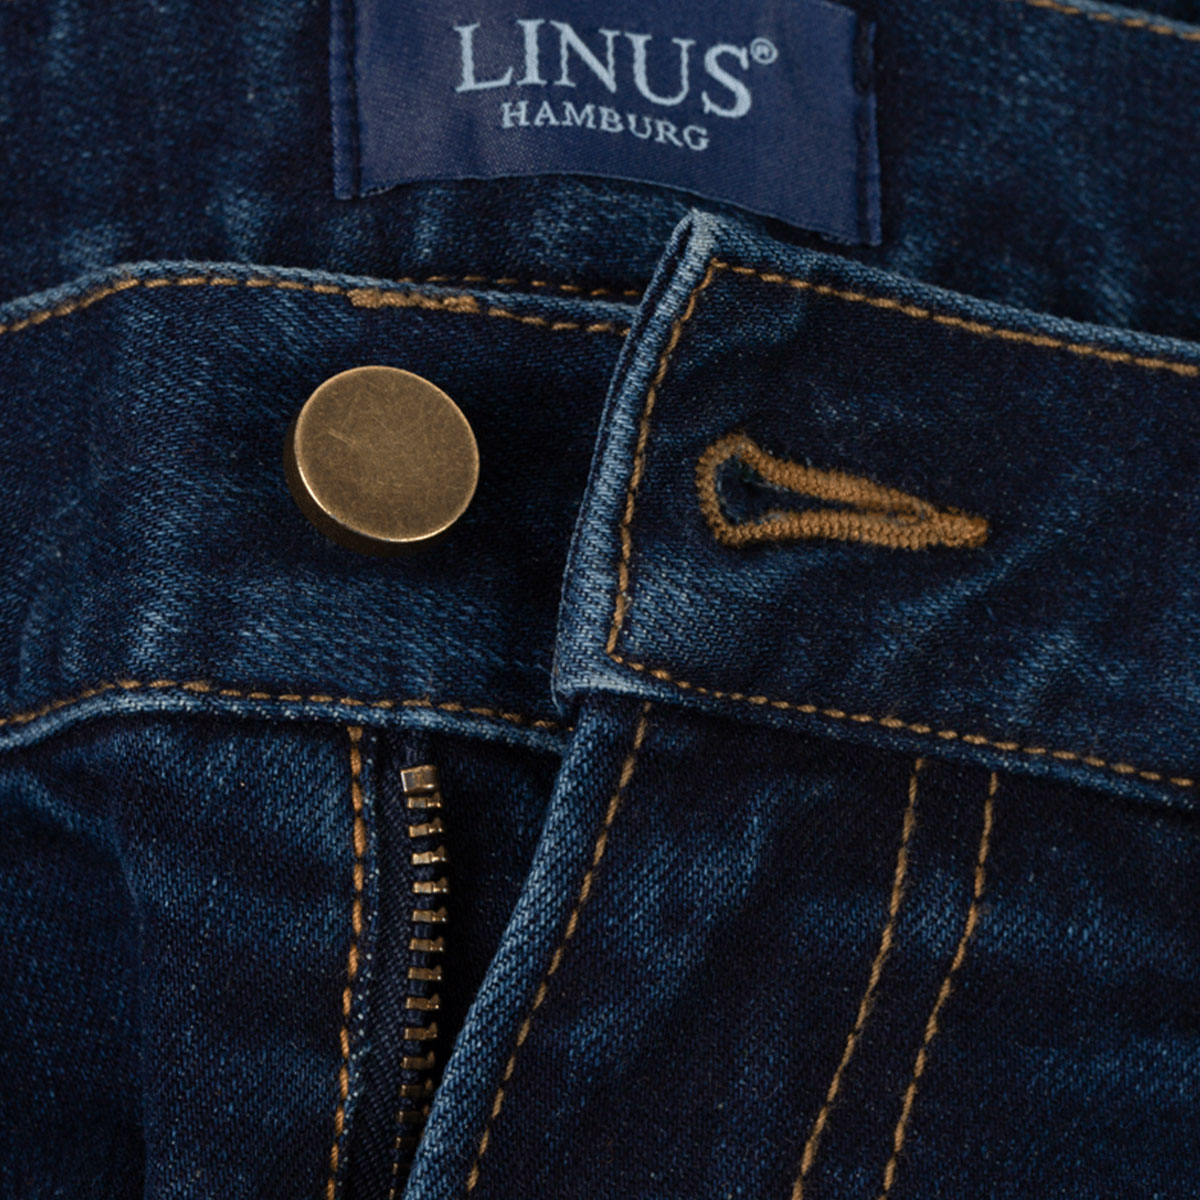 Hosenbund von der 5-Pocket Jeans 